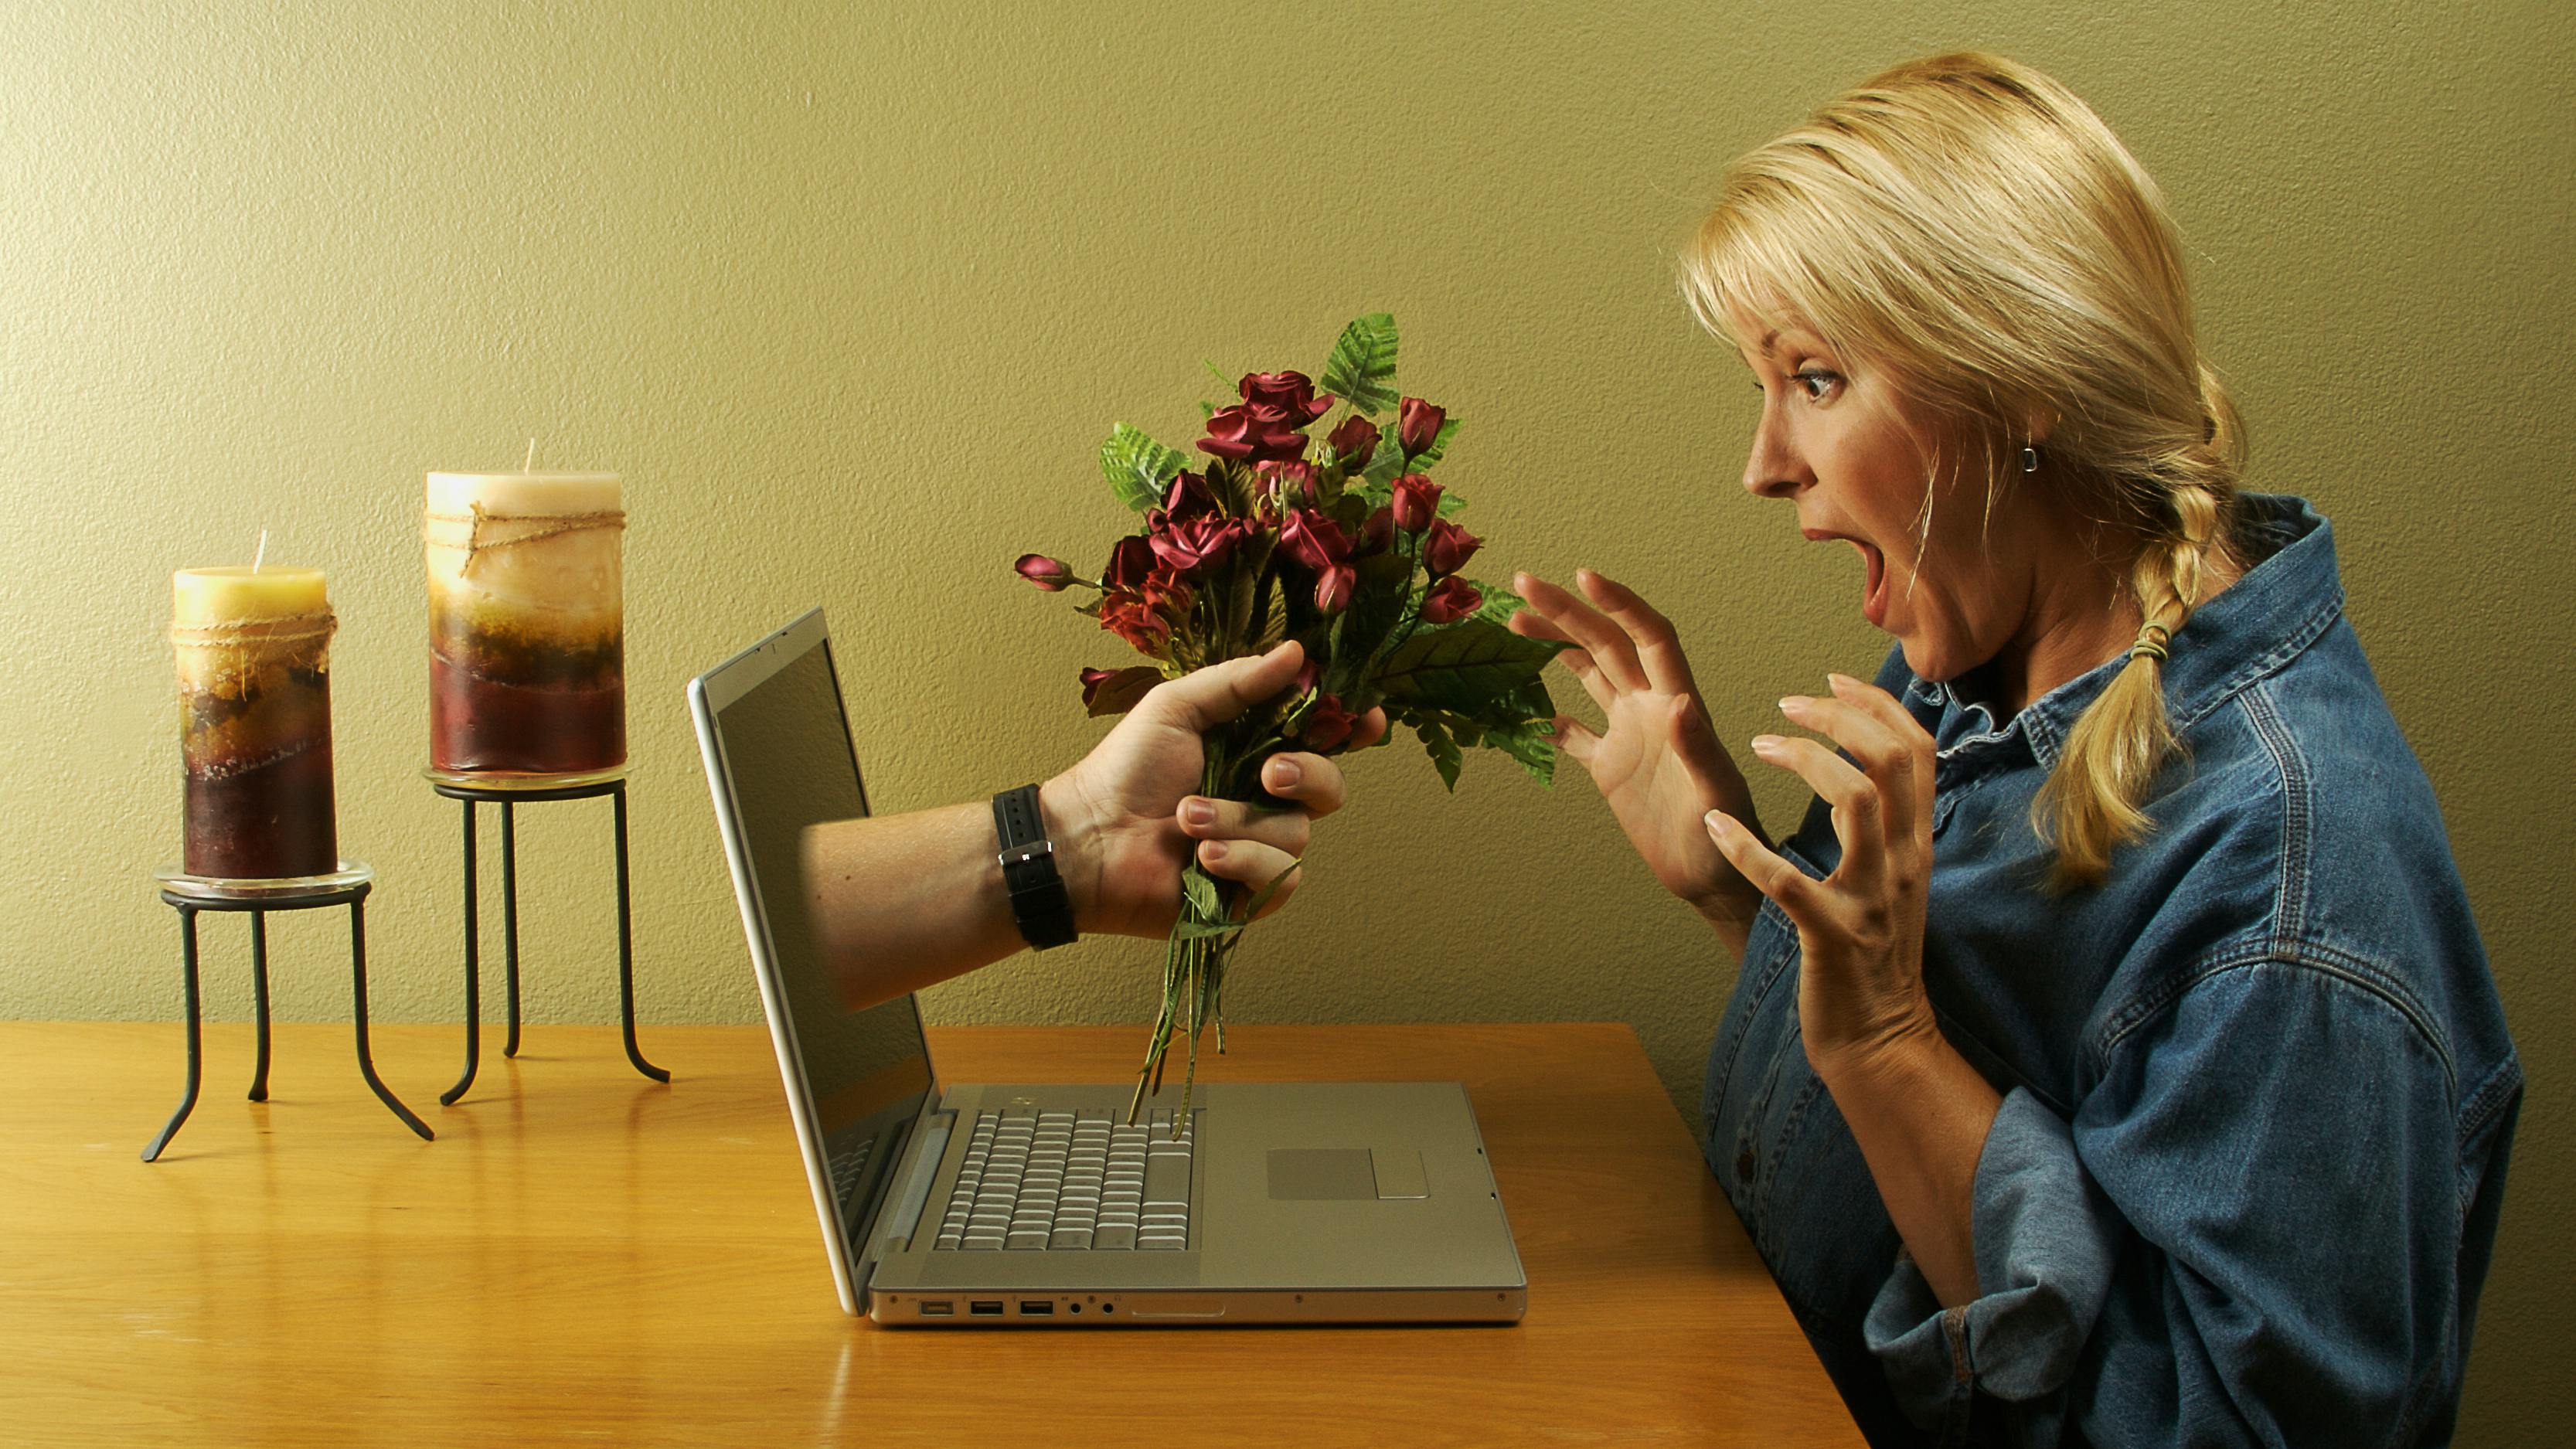 Найти подругу в интернете. Виртуальная любовь. Женщина в интернете. Разговор в интернете. Отношения в инете.